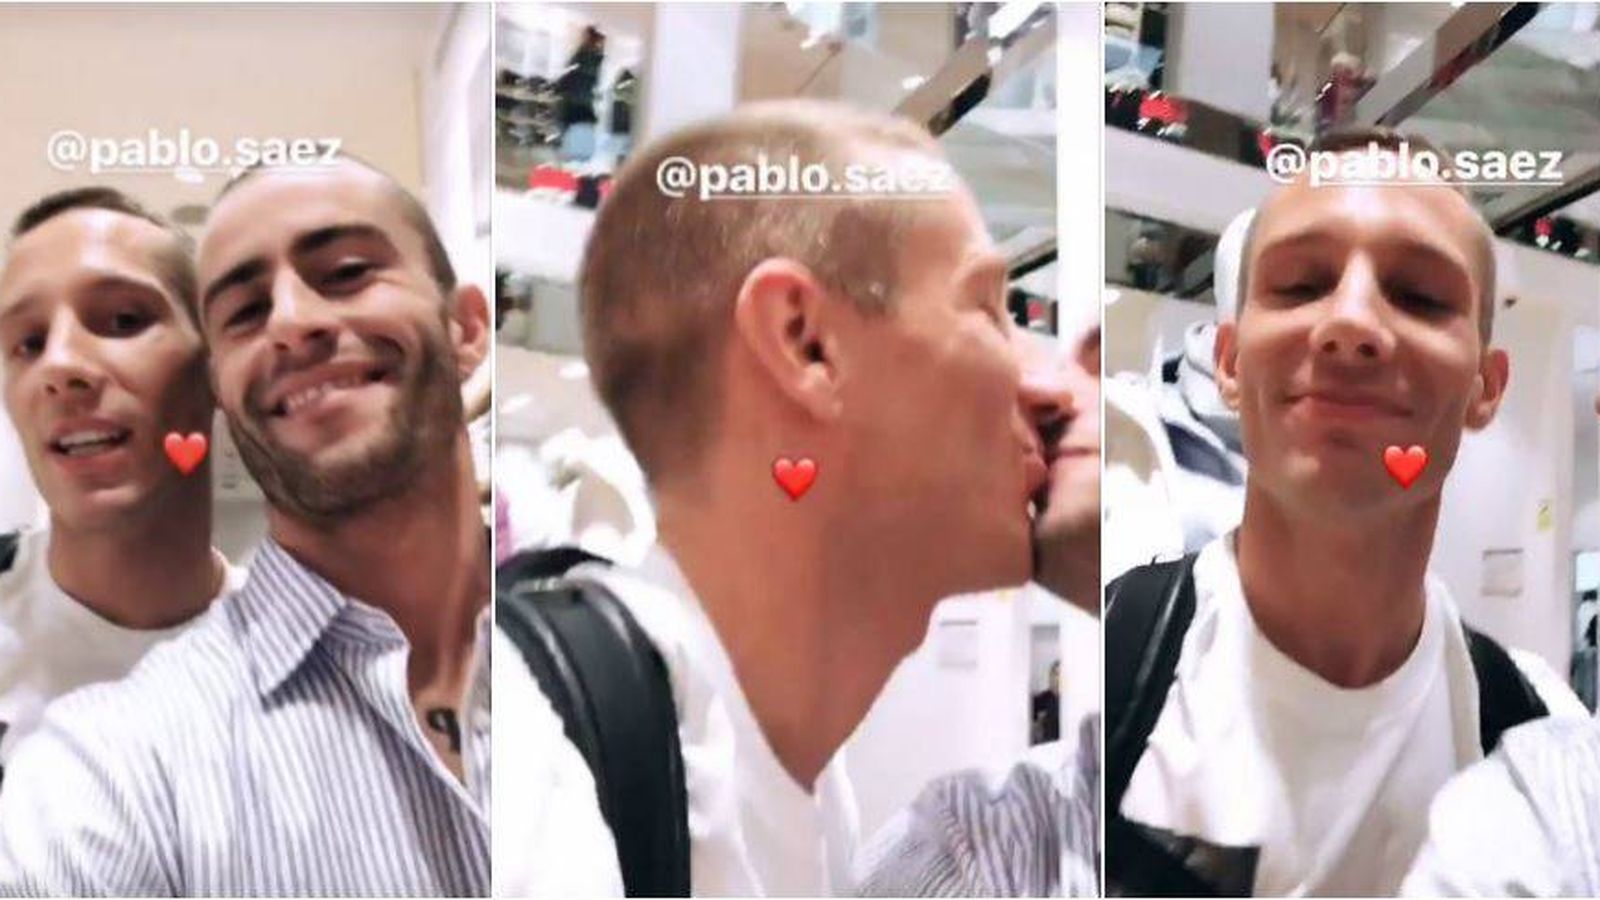 Foto: El beso de Pelayo y Pablo Sáez. (Instagram)